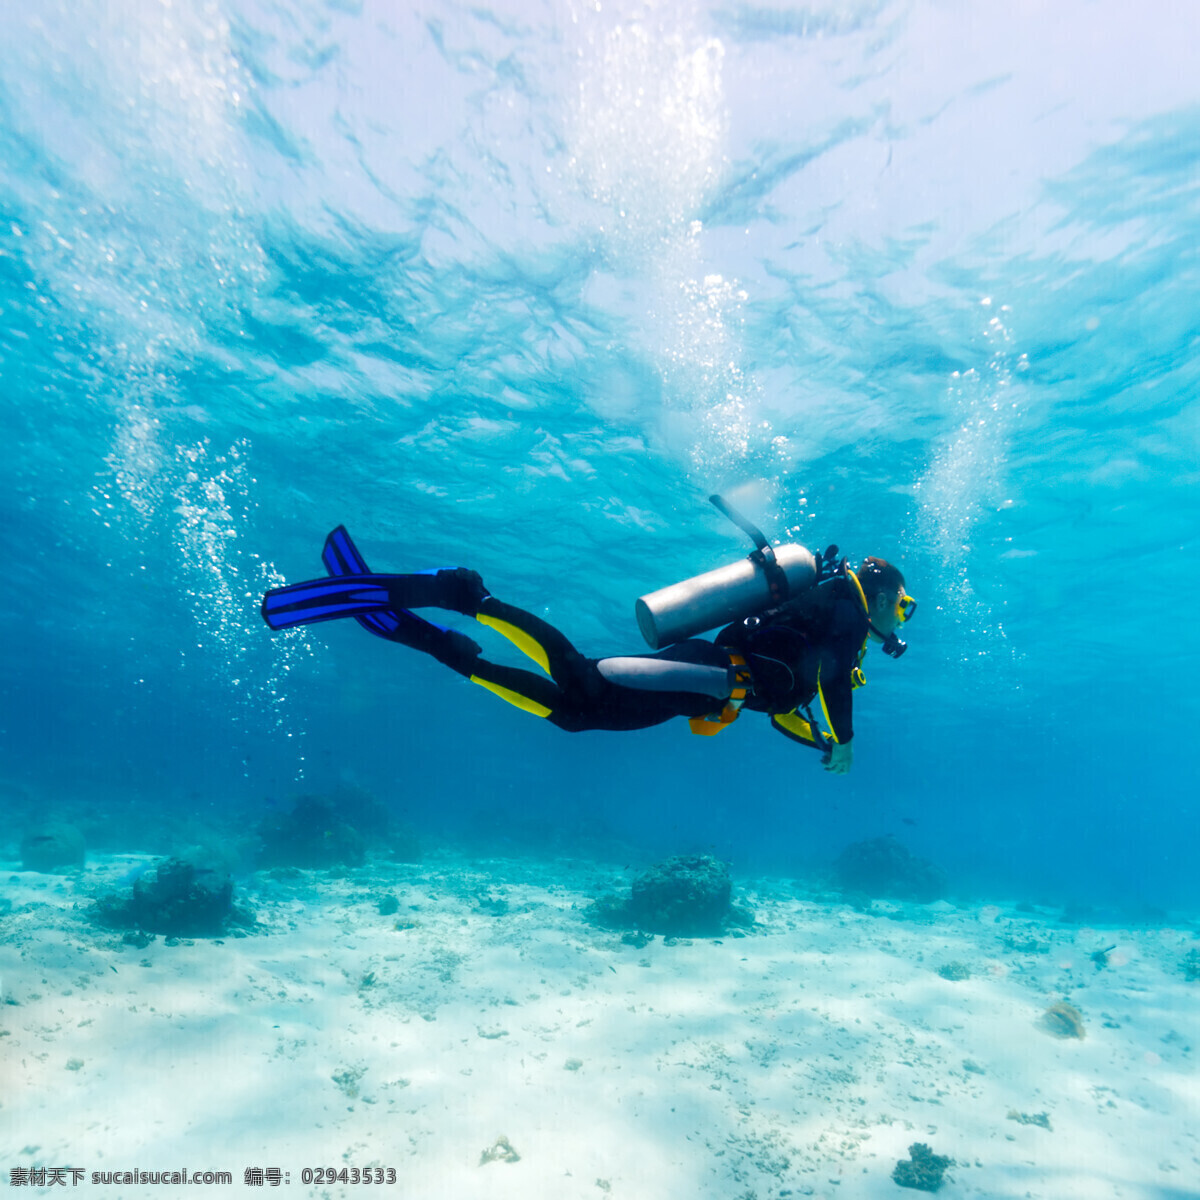 深海潜水 海底 潜水 大海 清清潜水员 旅游摄影 人文景观